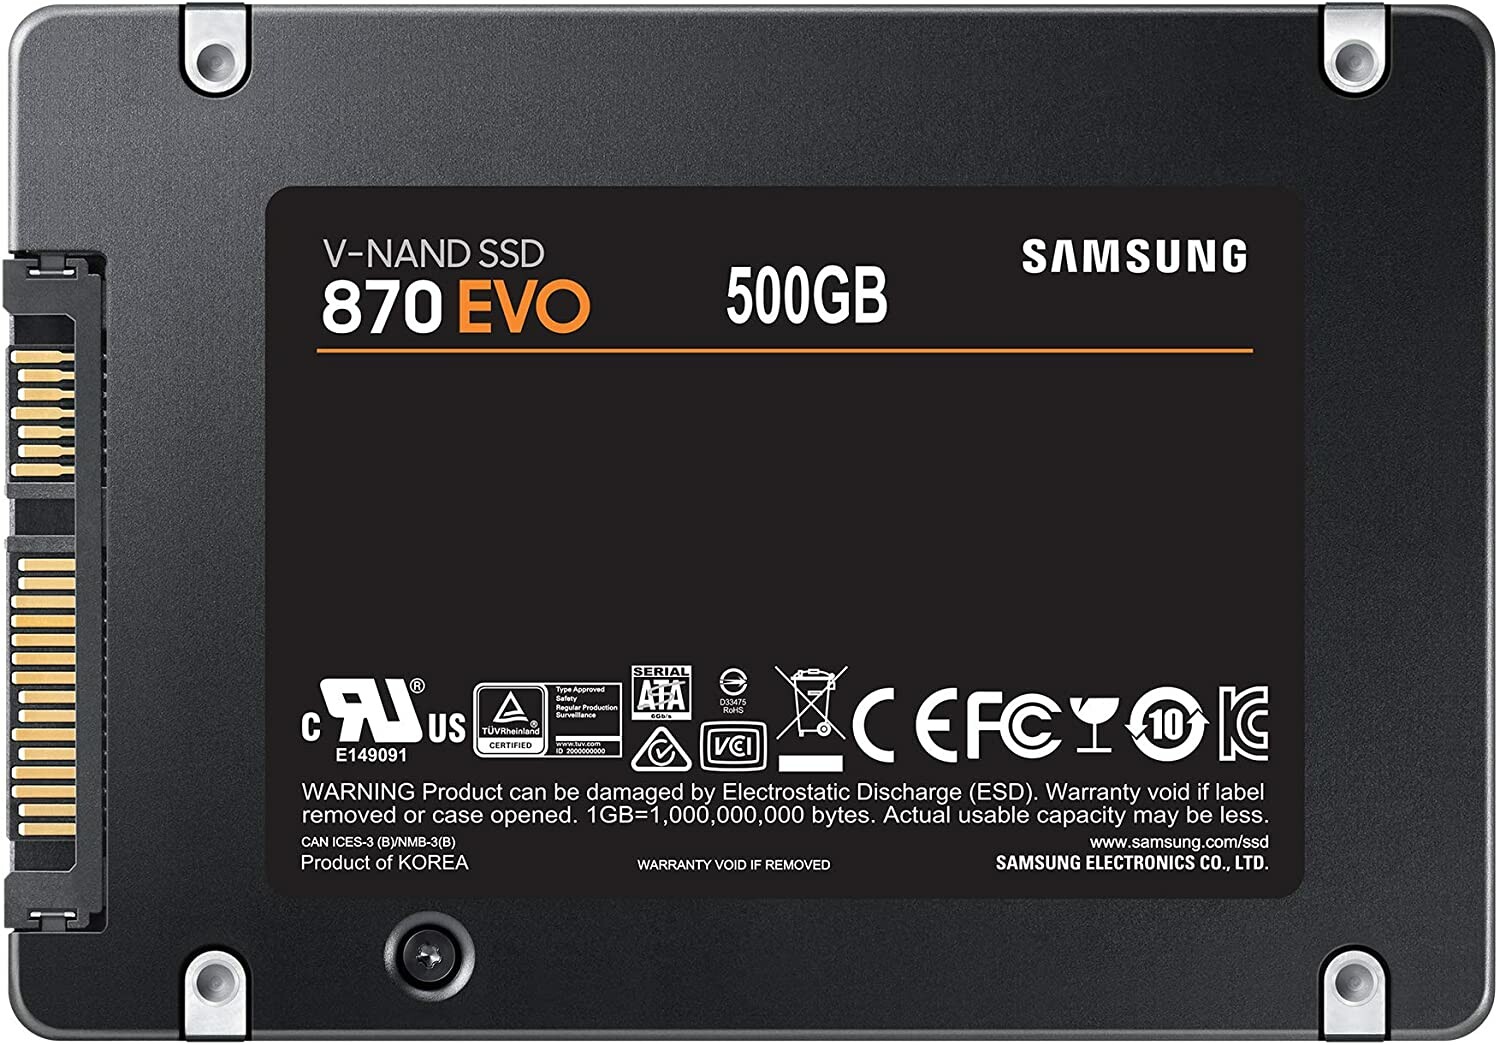 Disque dur SSD interne CRUCIAL 500Go BX500